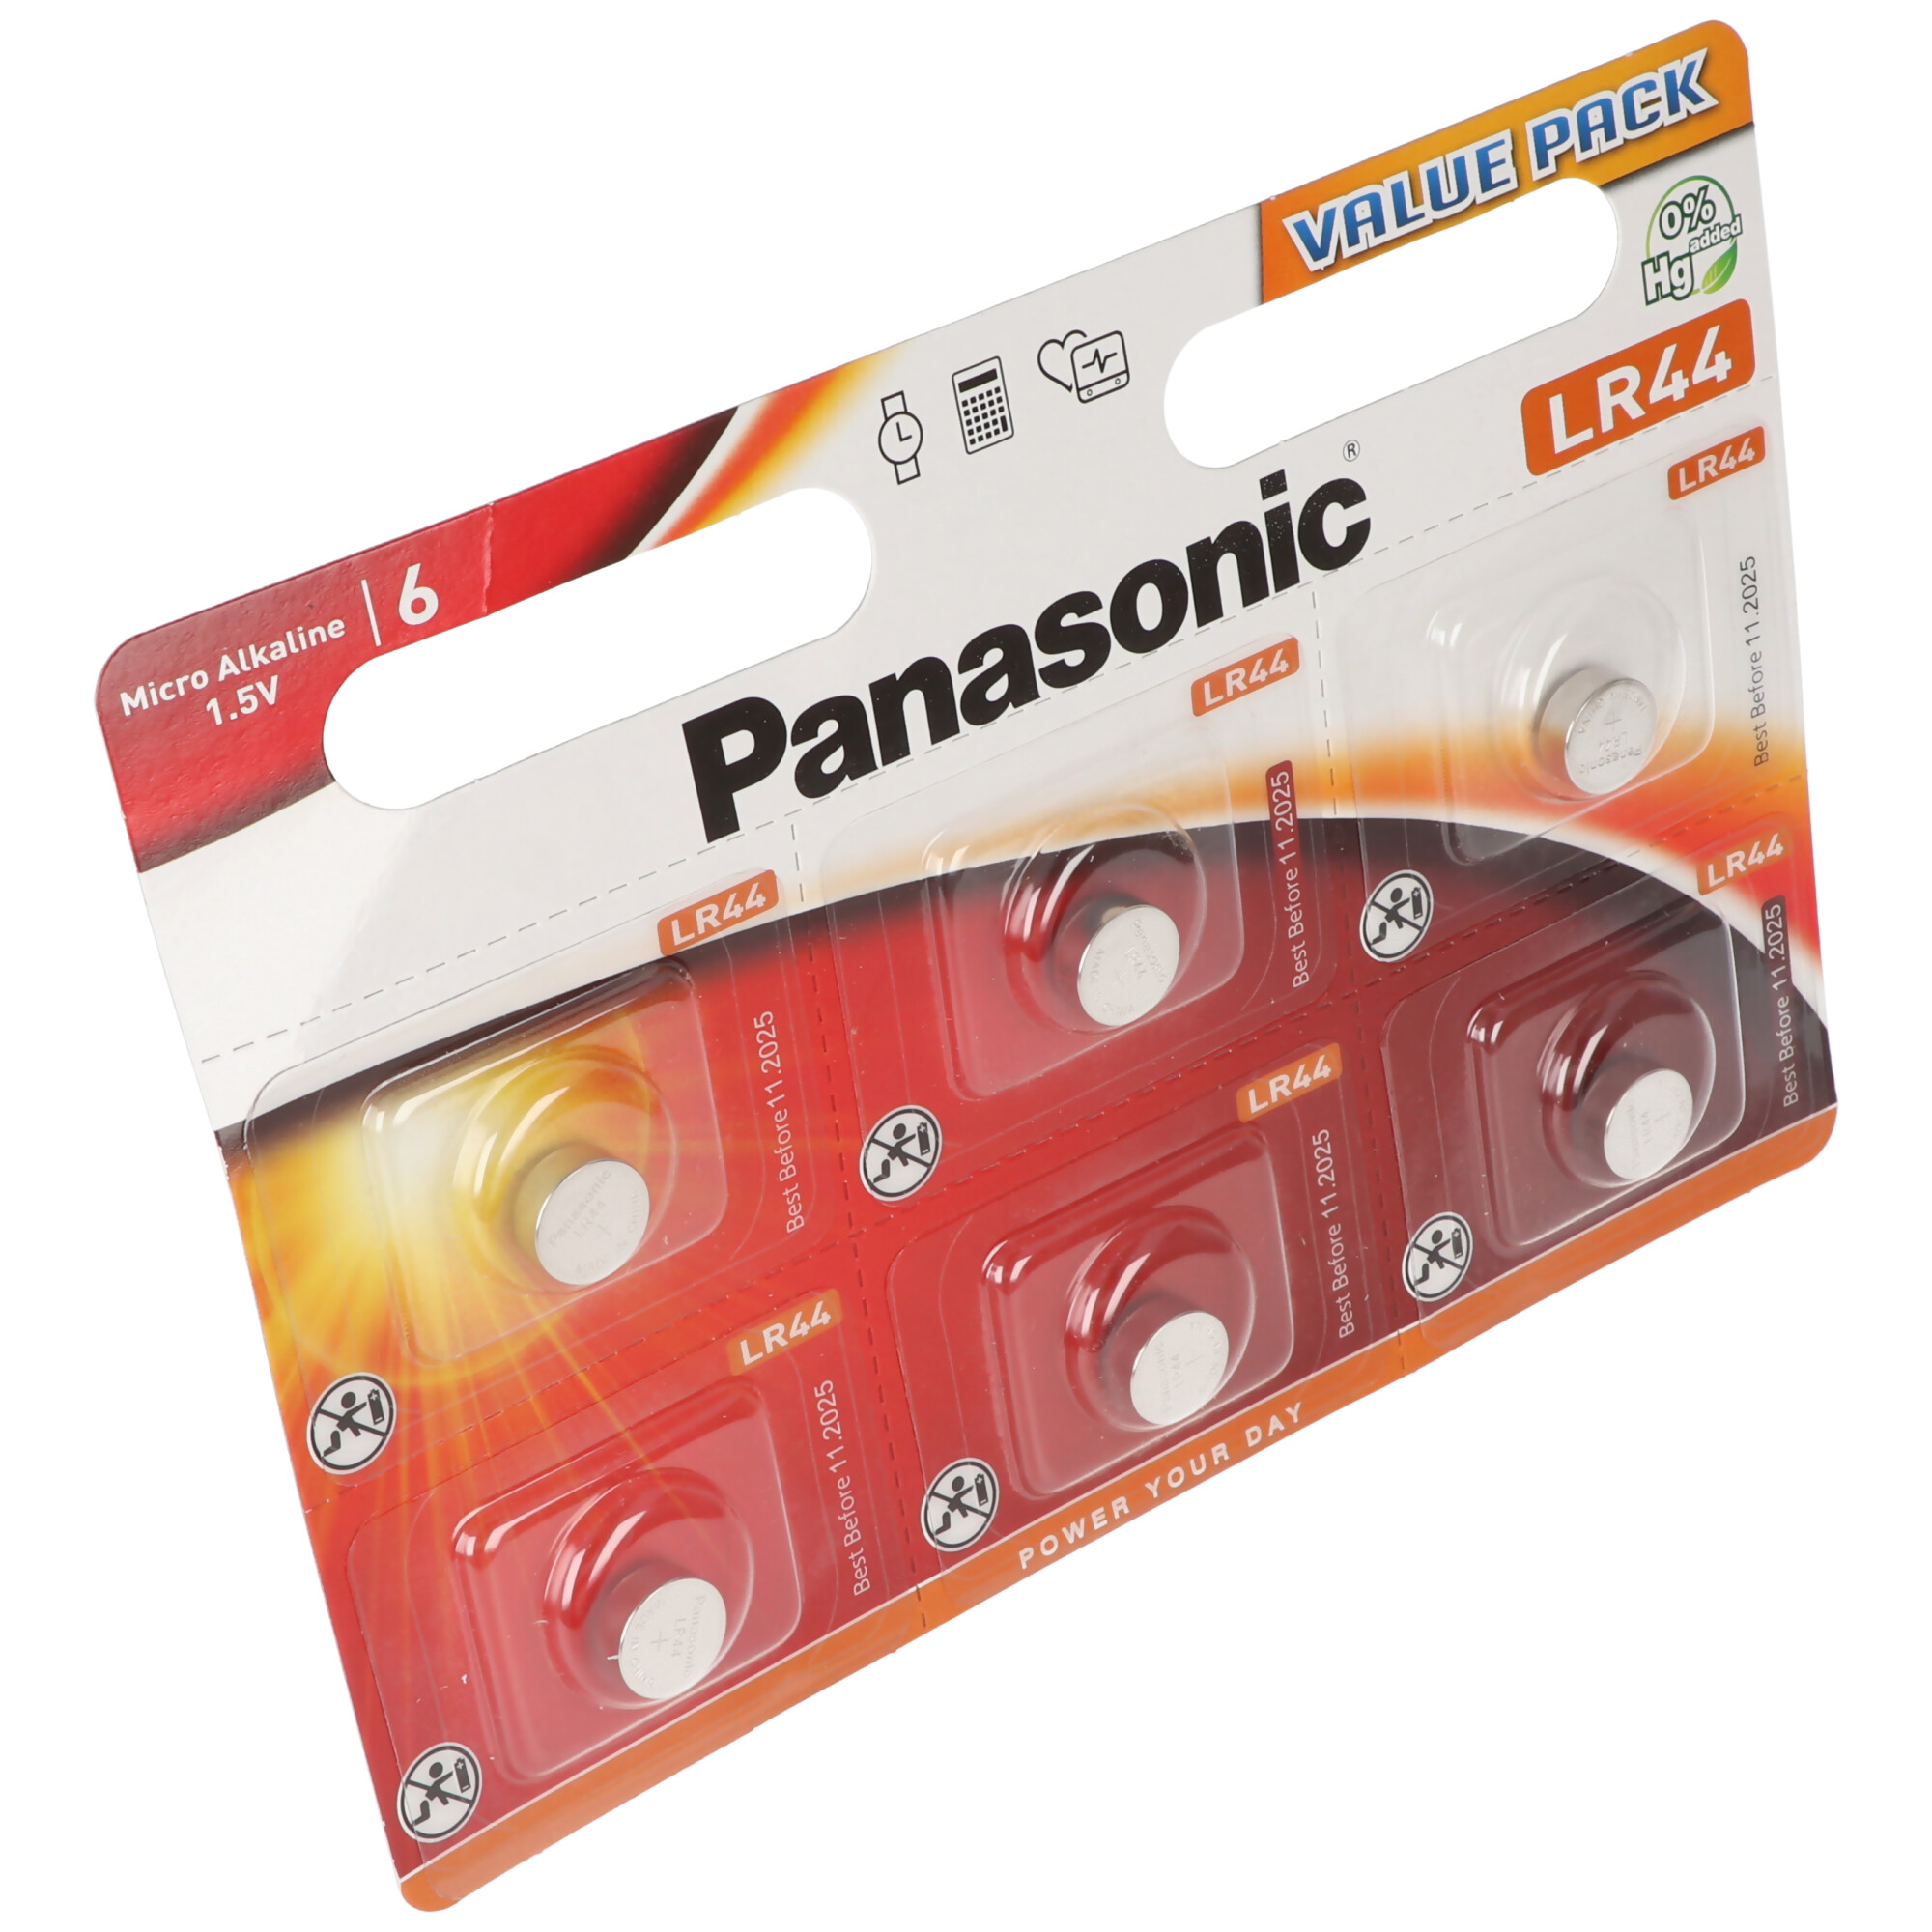 Panasonic Batterie Lithium Knopfzelle CR2025 3V - Battery - CR2025  (CR-2025EL/4B)